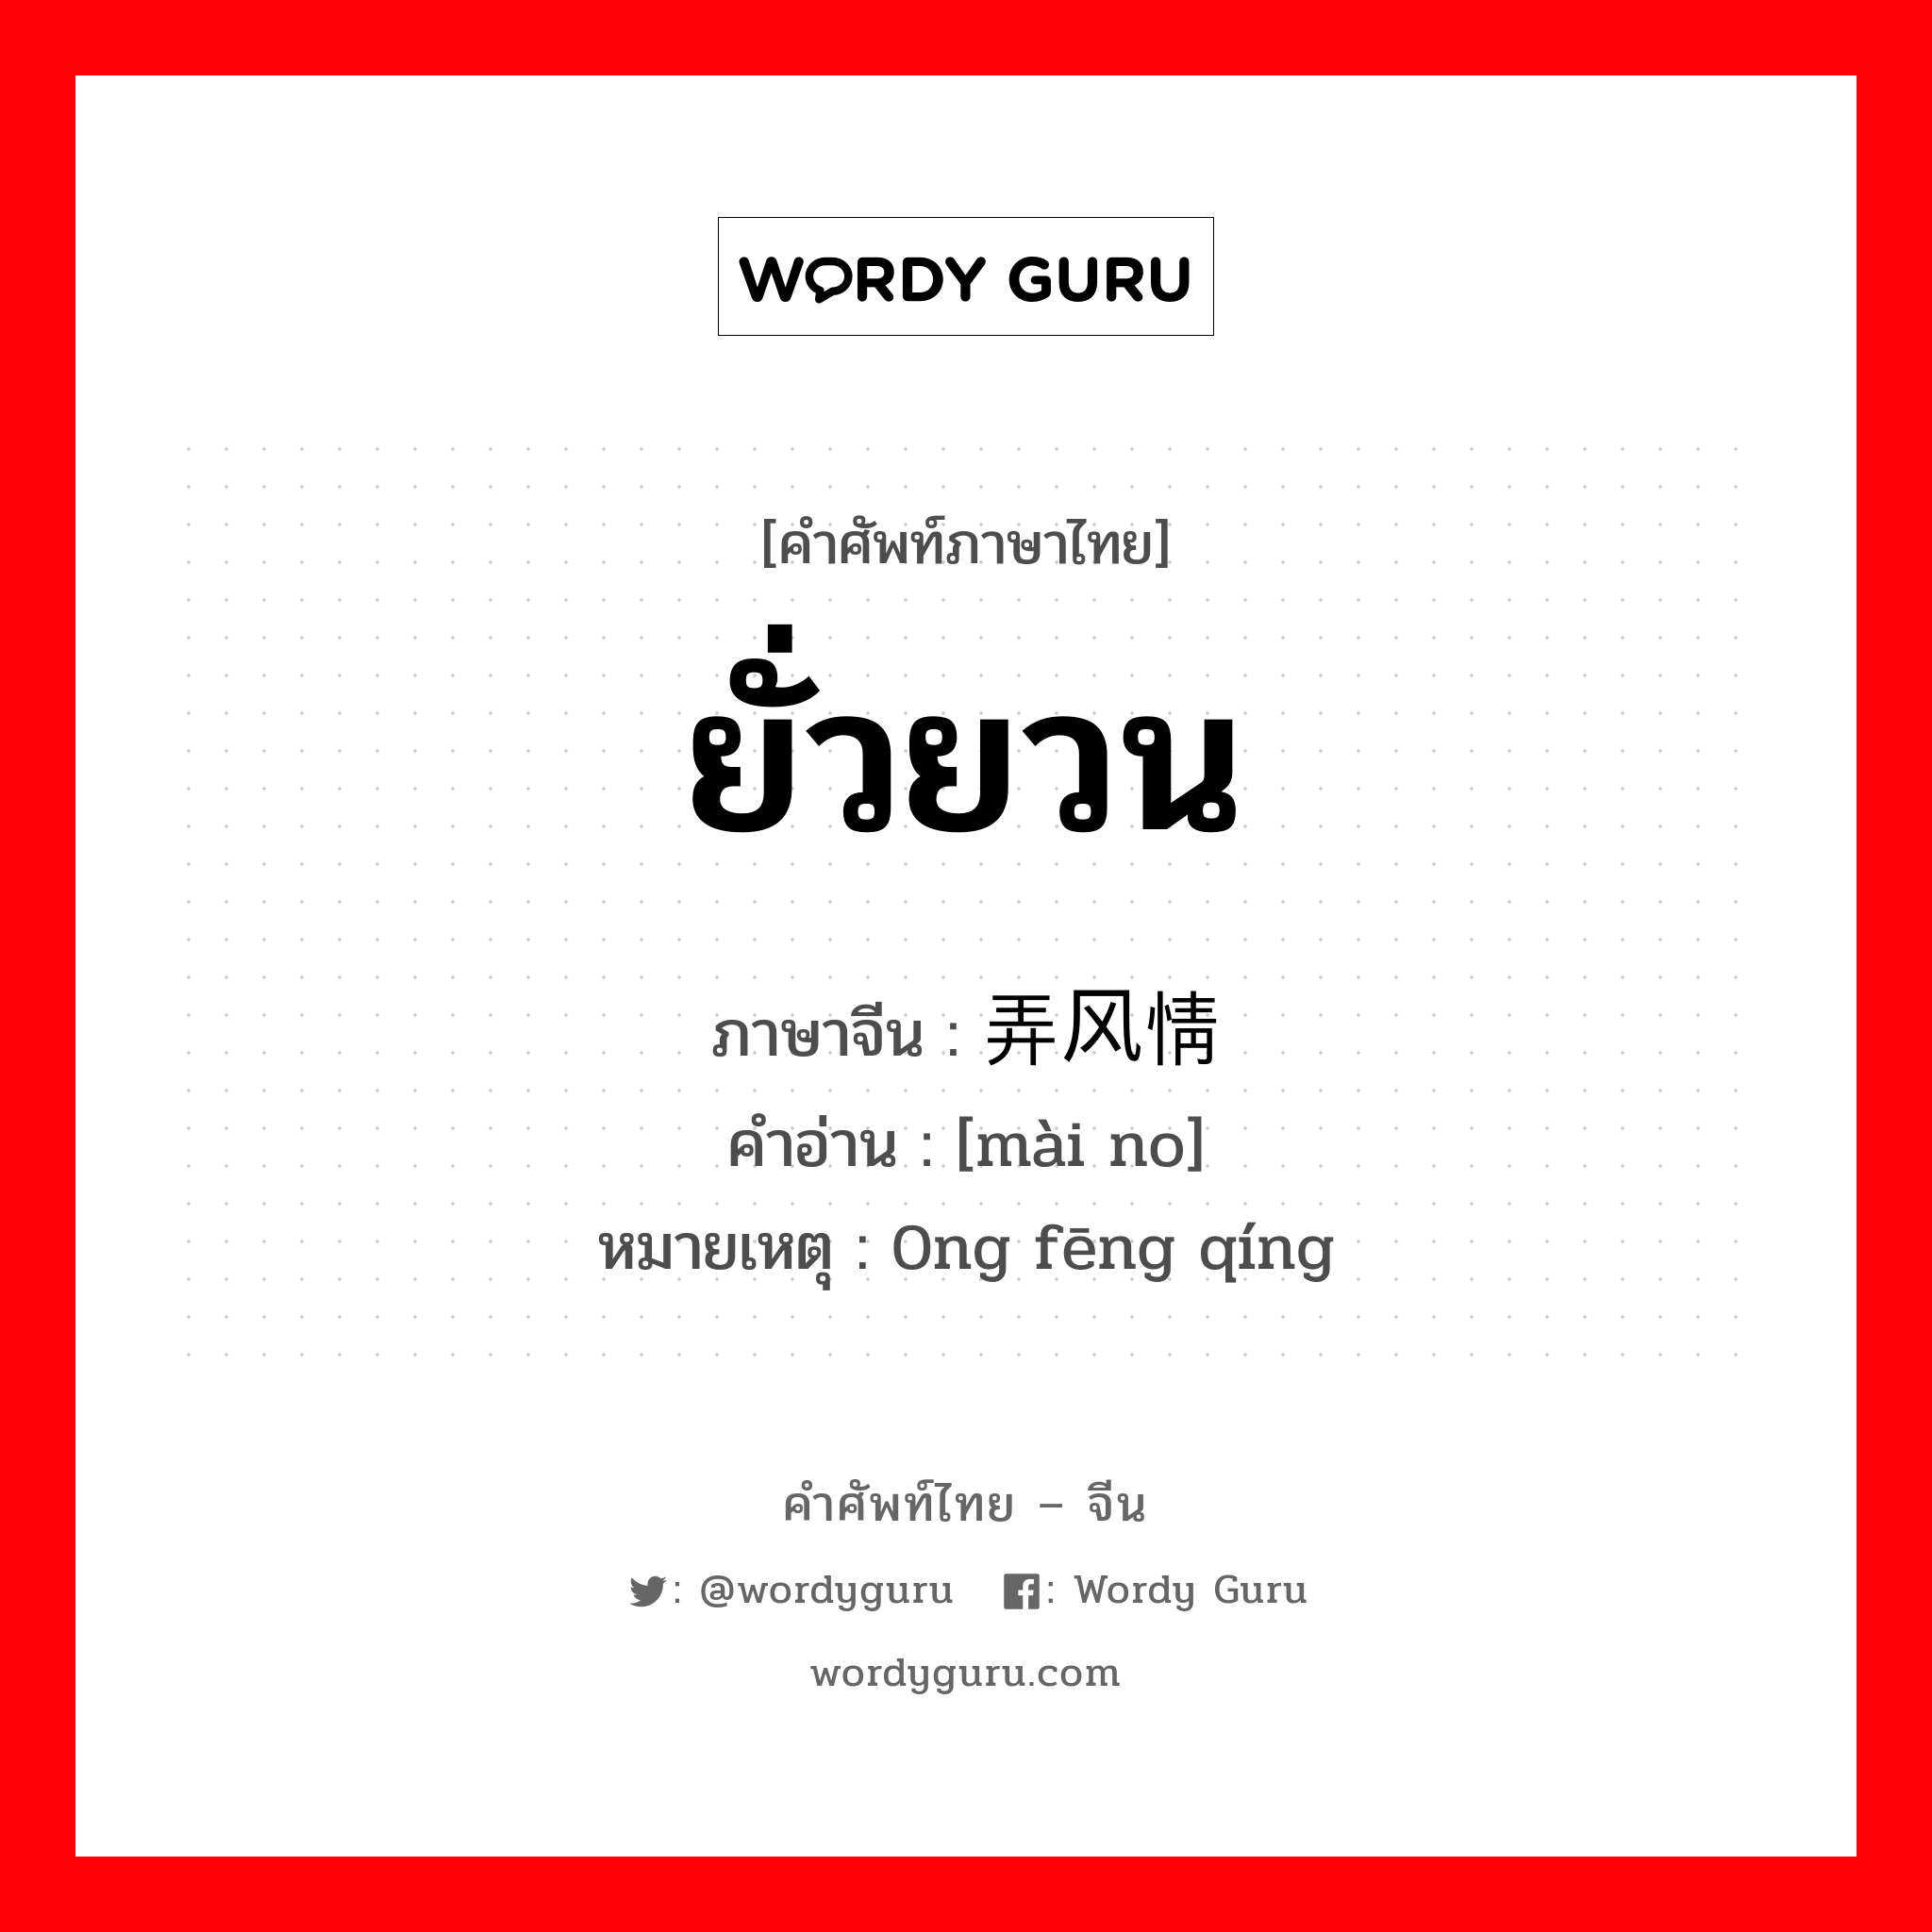 ยั่วยวน ภาษาจีนคืออะไร, คำศัพท์ภาษาไทย - จีน ยั่วยวน ภาษาจีน 卖弄风情 คำอ่าน [mài no] หมายเหตุ 0ng fēng qíng